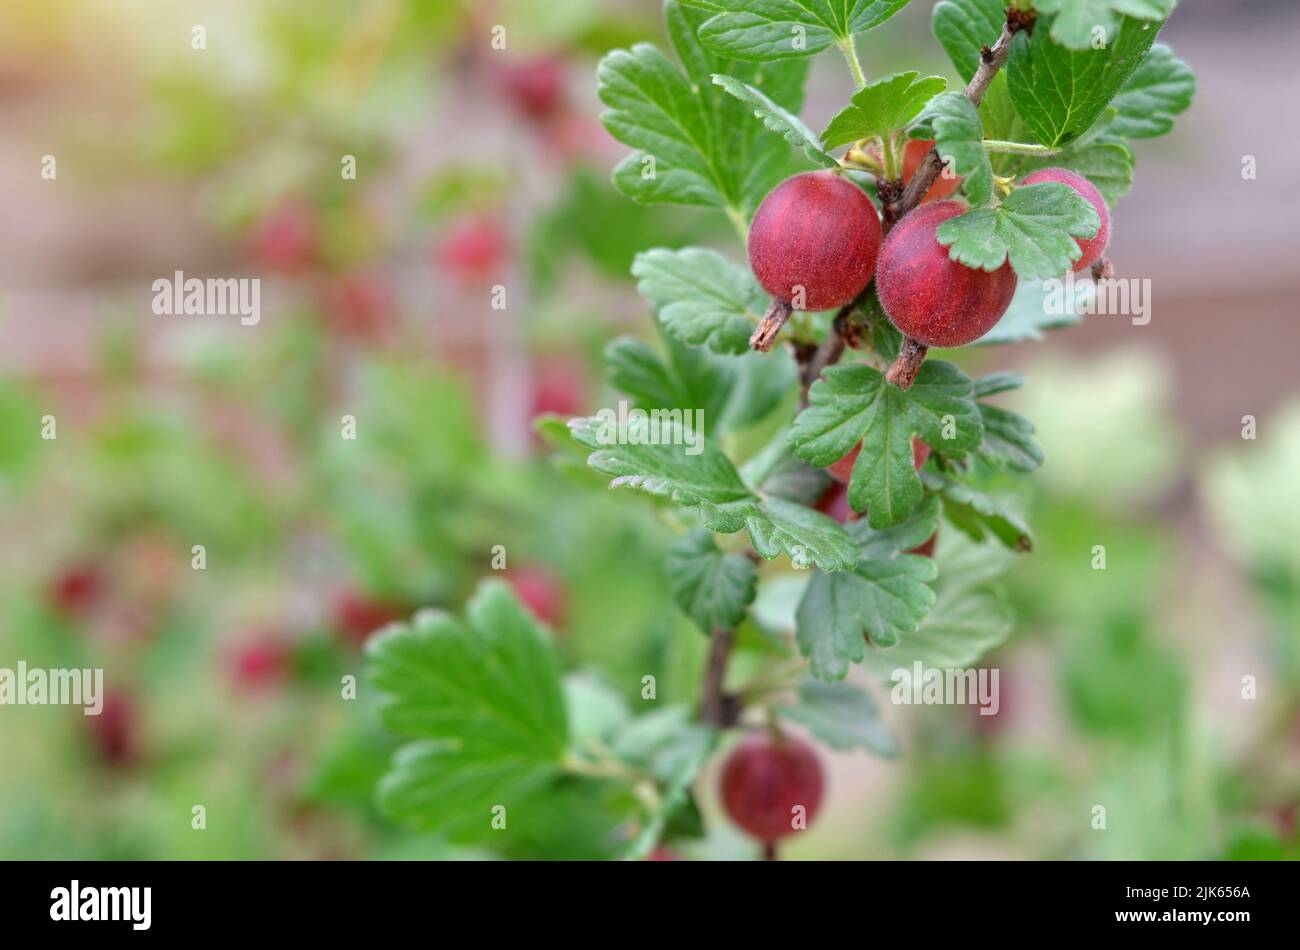 Nahaufnahme von reifen rosa Stachelbeeren mit grünen Blättern auf einem Ast. Das Konzept des Anbaus eigener Bio-Produkte. Stockfoto